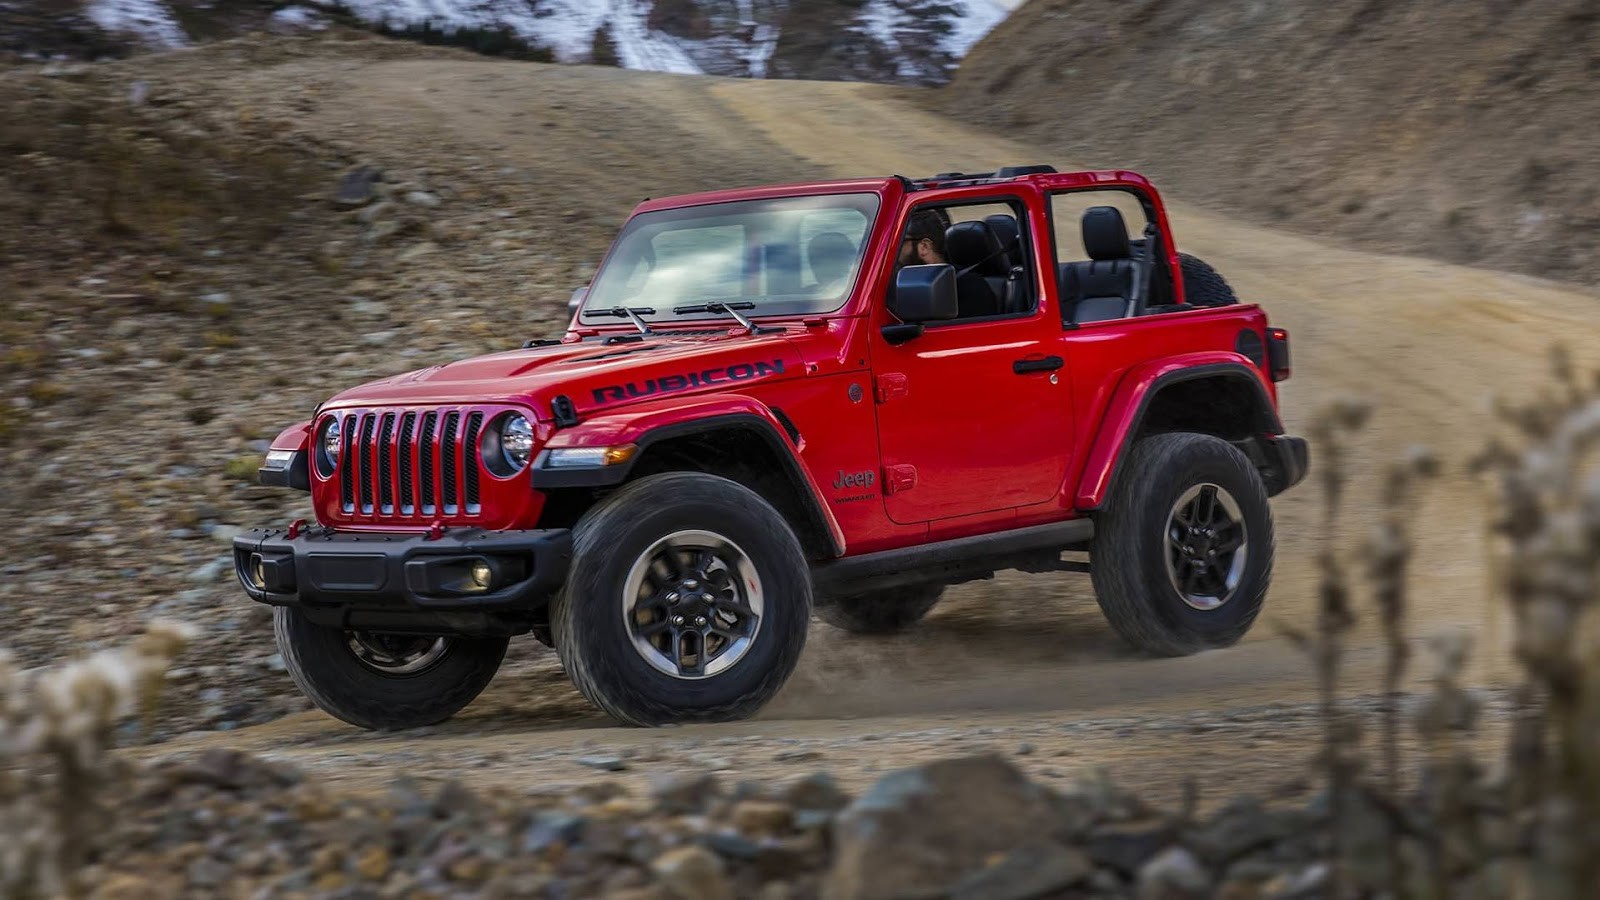 Presentata a Los Angeles la nuova Jeep Wrangler 2018